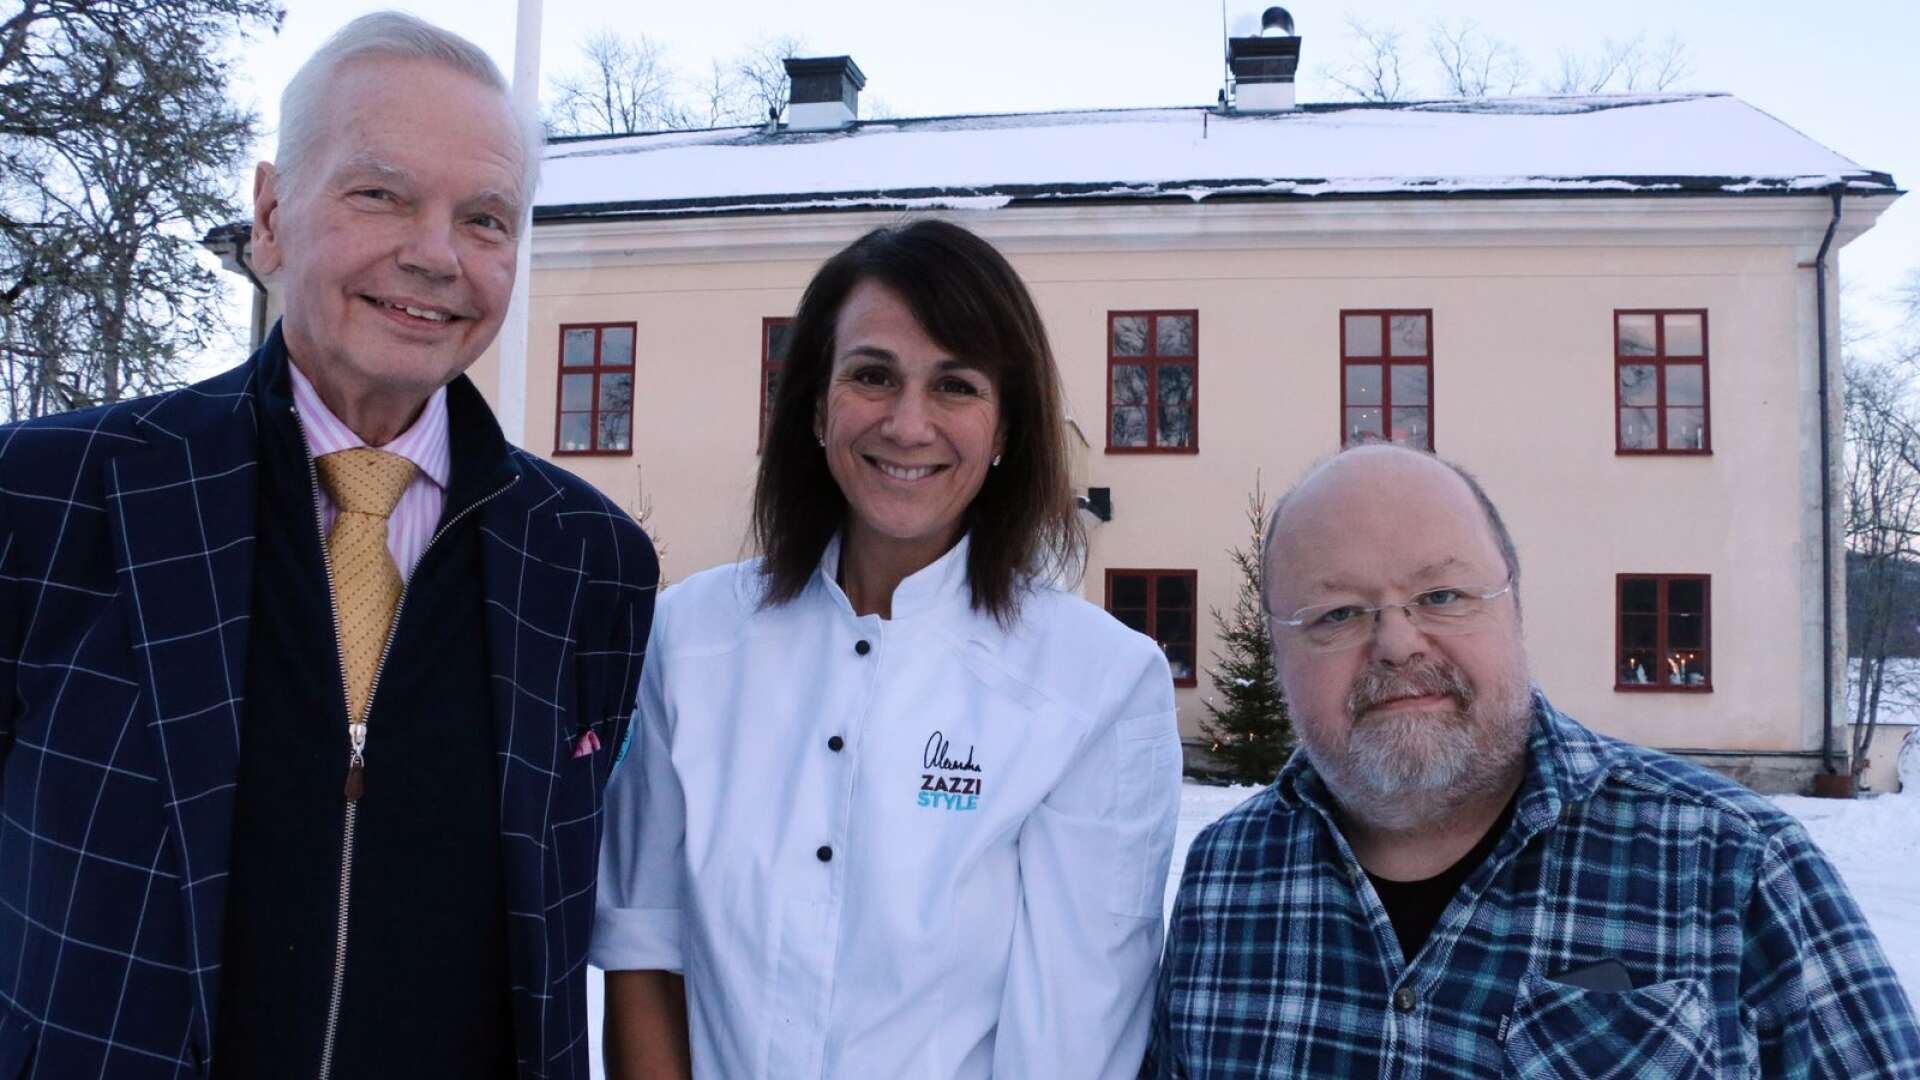 Carl Jan Granqvist, Alexandra Zazzi och Kalle Moraeus har blivit goda vänner, mycket tack vare det goda i livet.